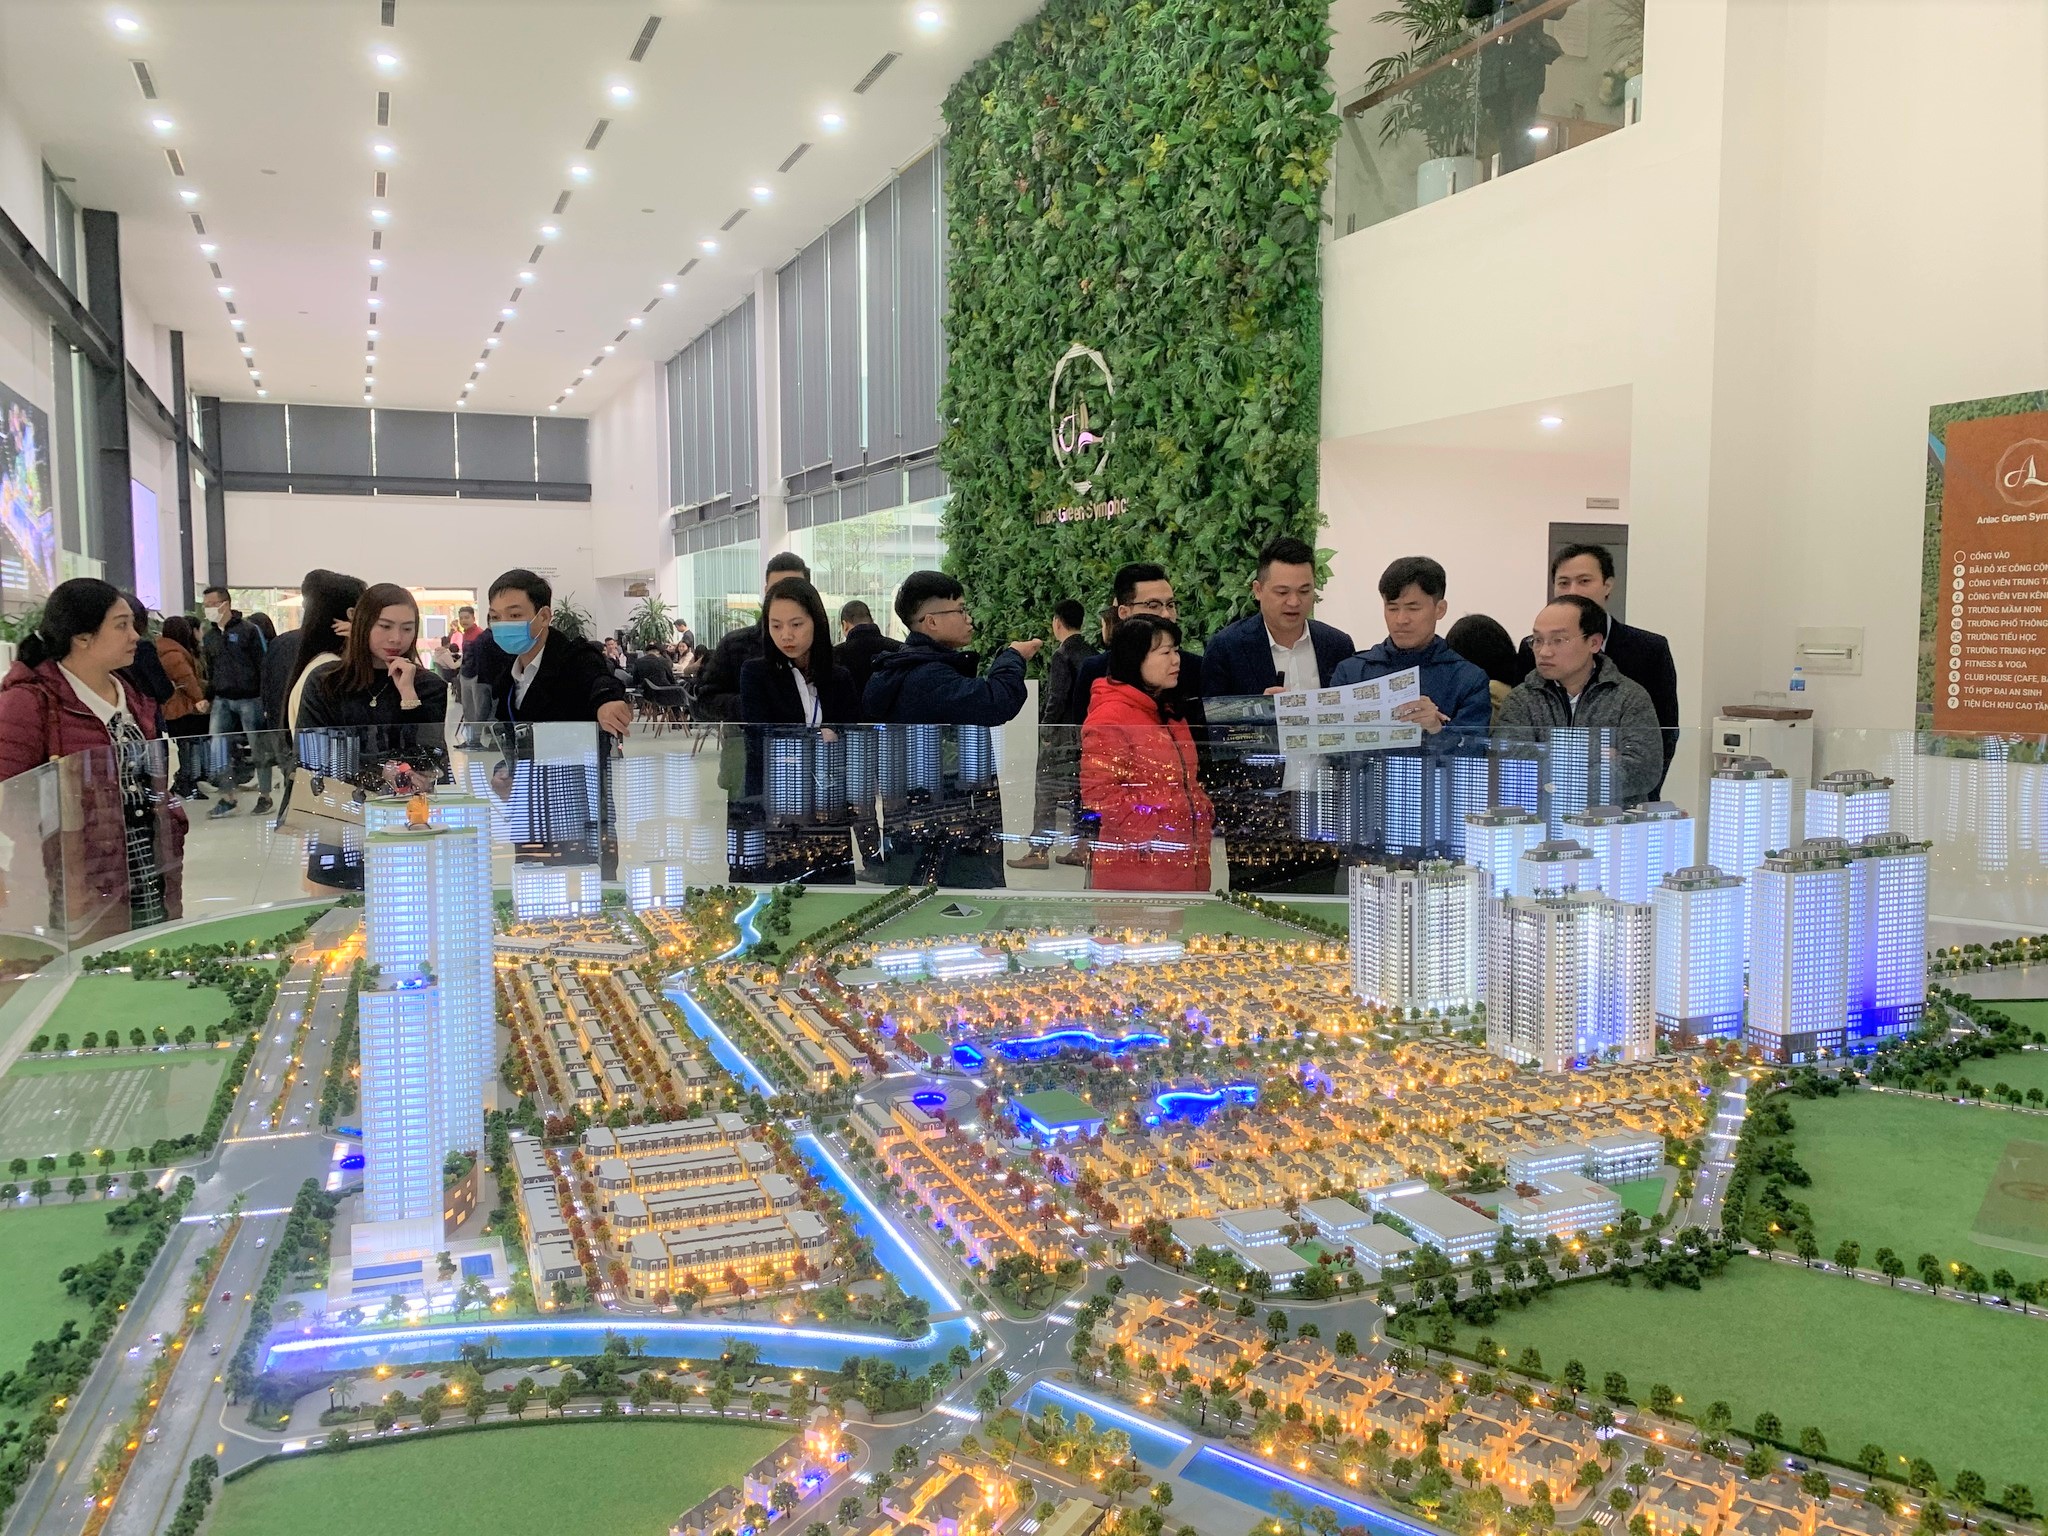 Thanh khoản nhà ở chậm cải thiện, dự án nào tại Hà Nội vẫn tấp nập khách tham quan?